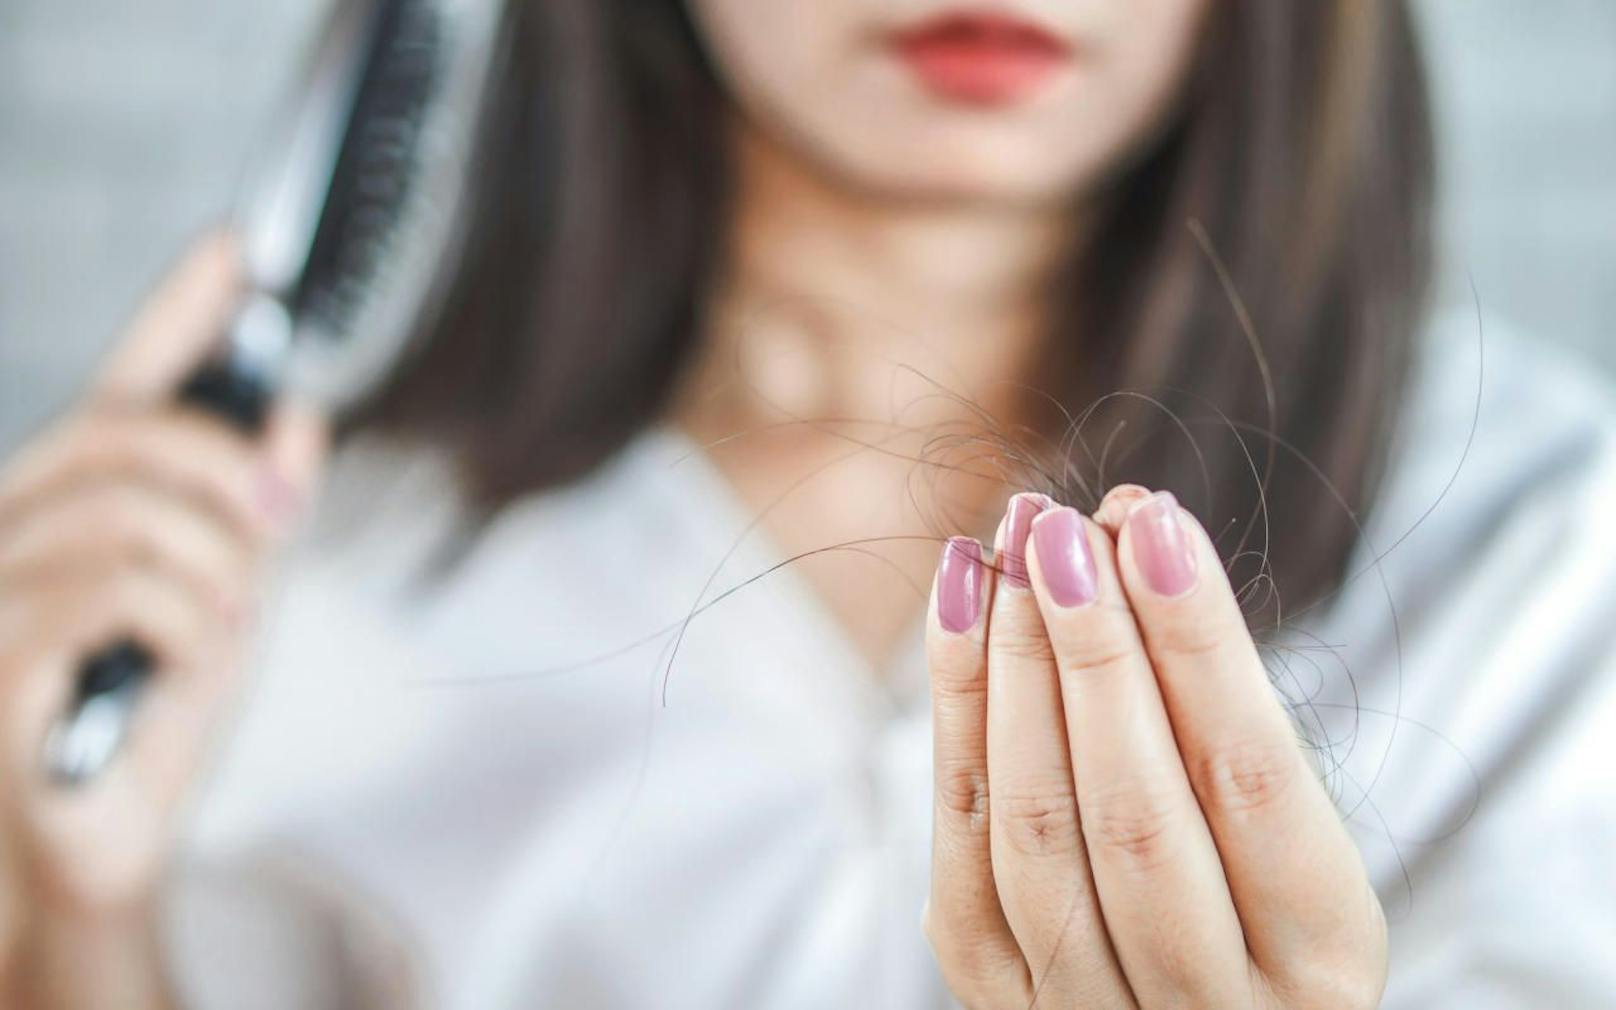 Haarausfall betrifft sowohl Männer als auch Frauen und ist häufig genetisch bedingt. Aber auch andere Faktoren können dazu führen. 